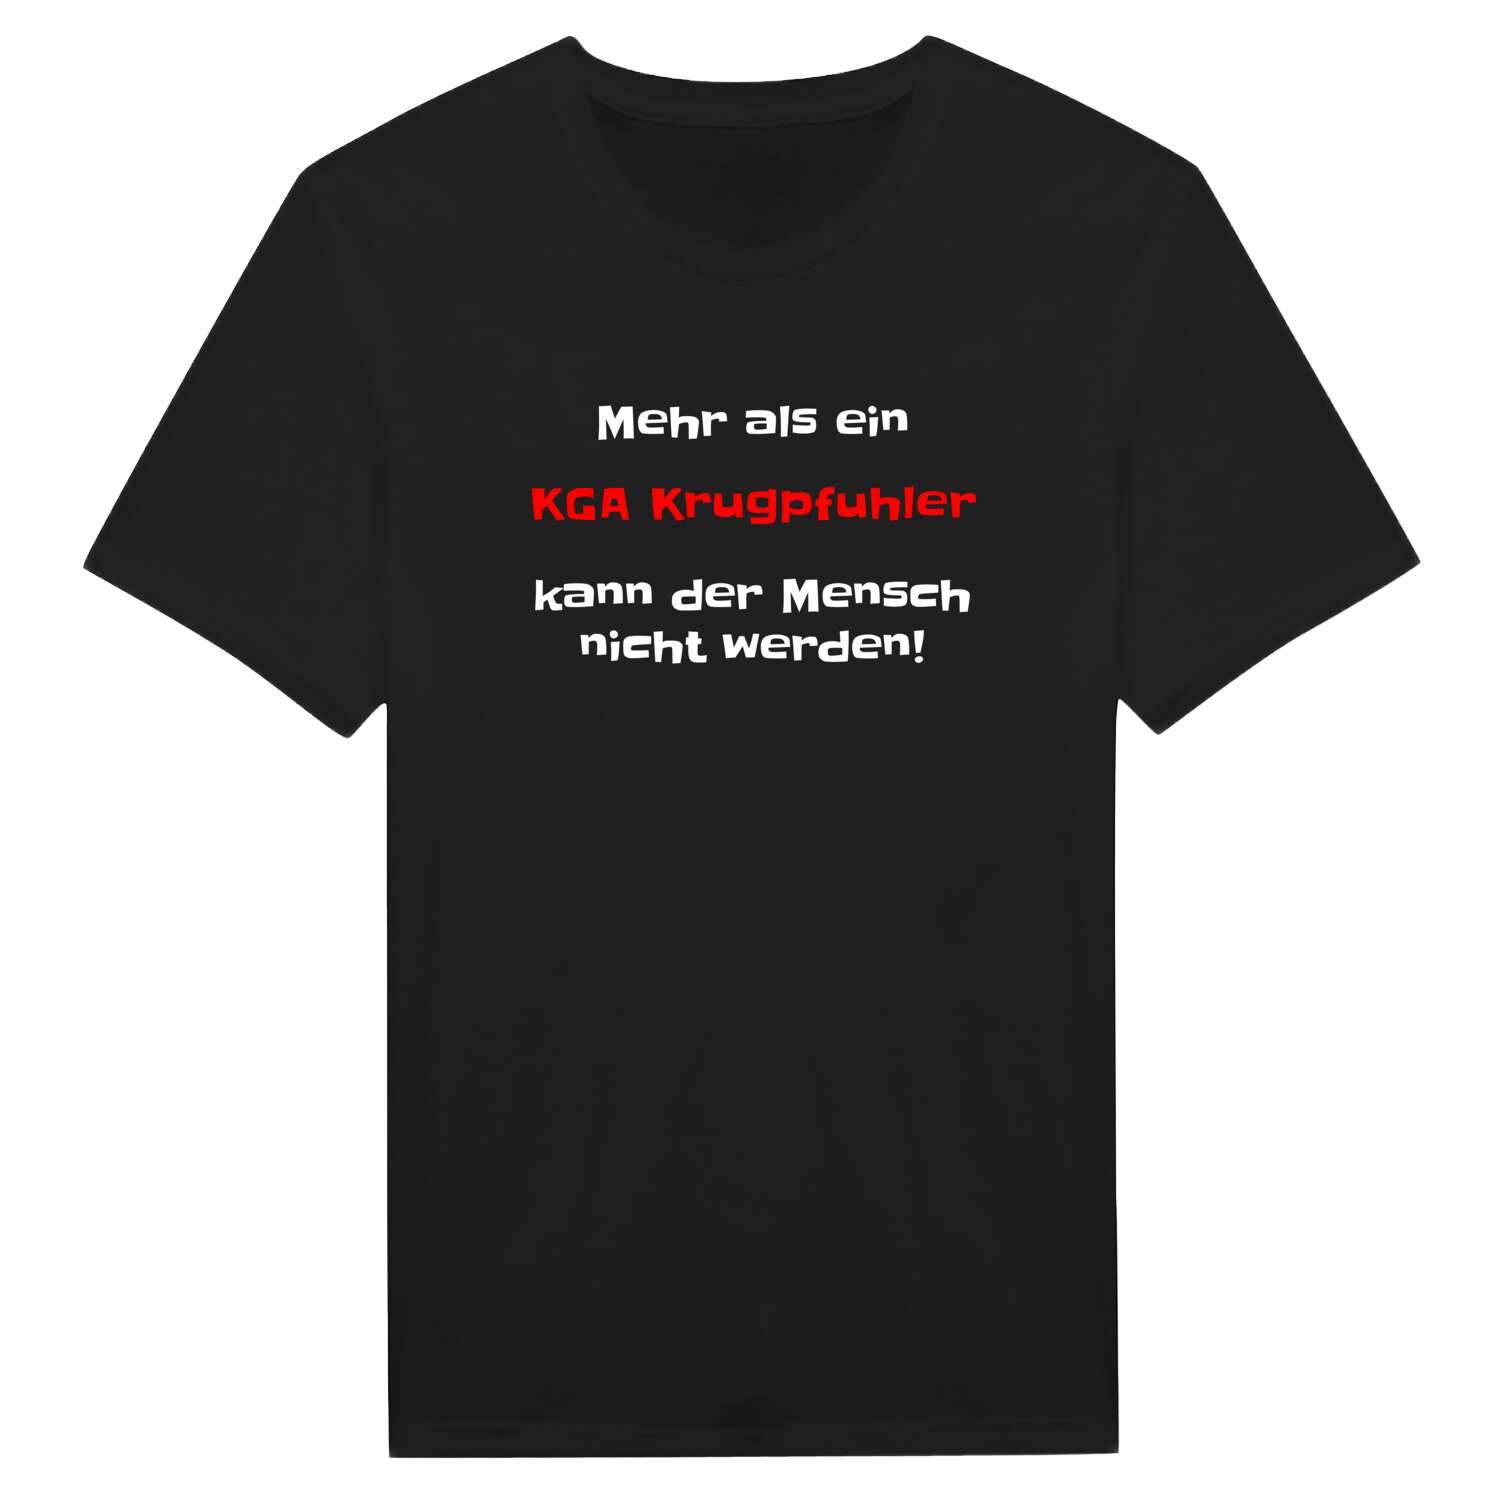 KGA Krugpfuhl T-Shirt »Mehr als ein«